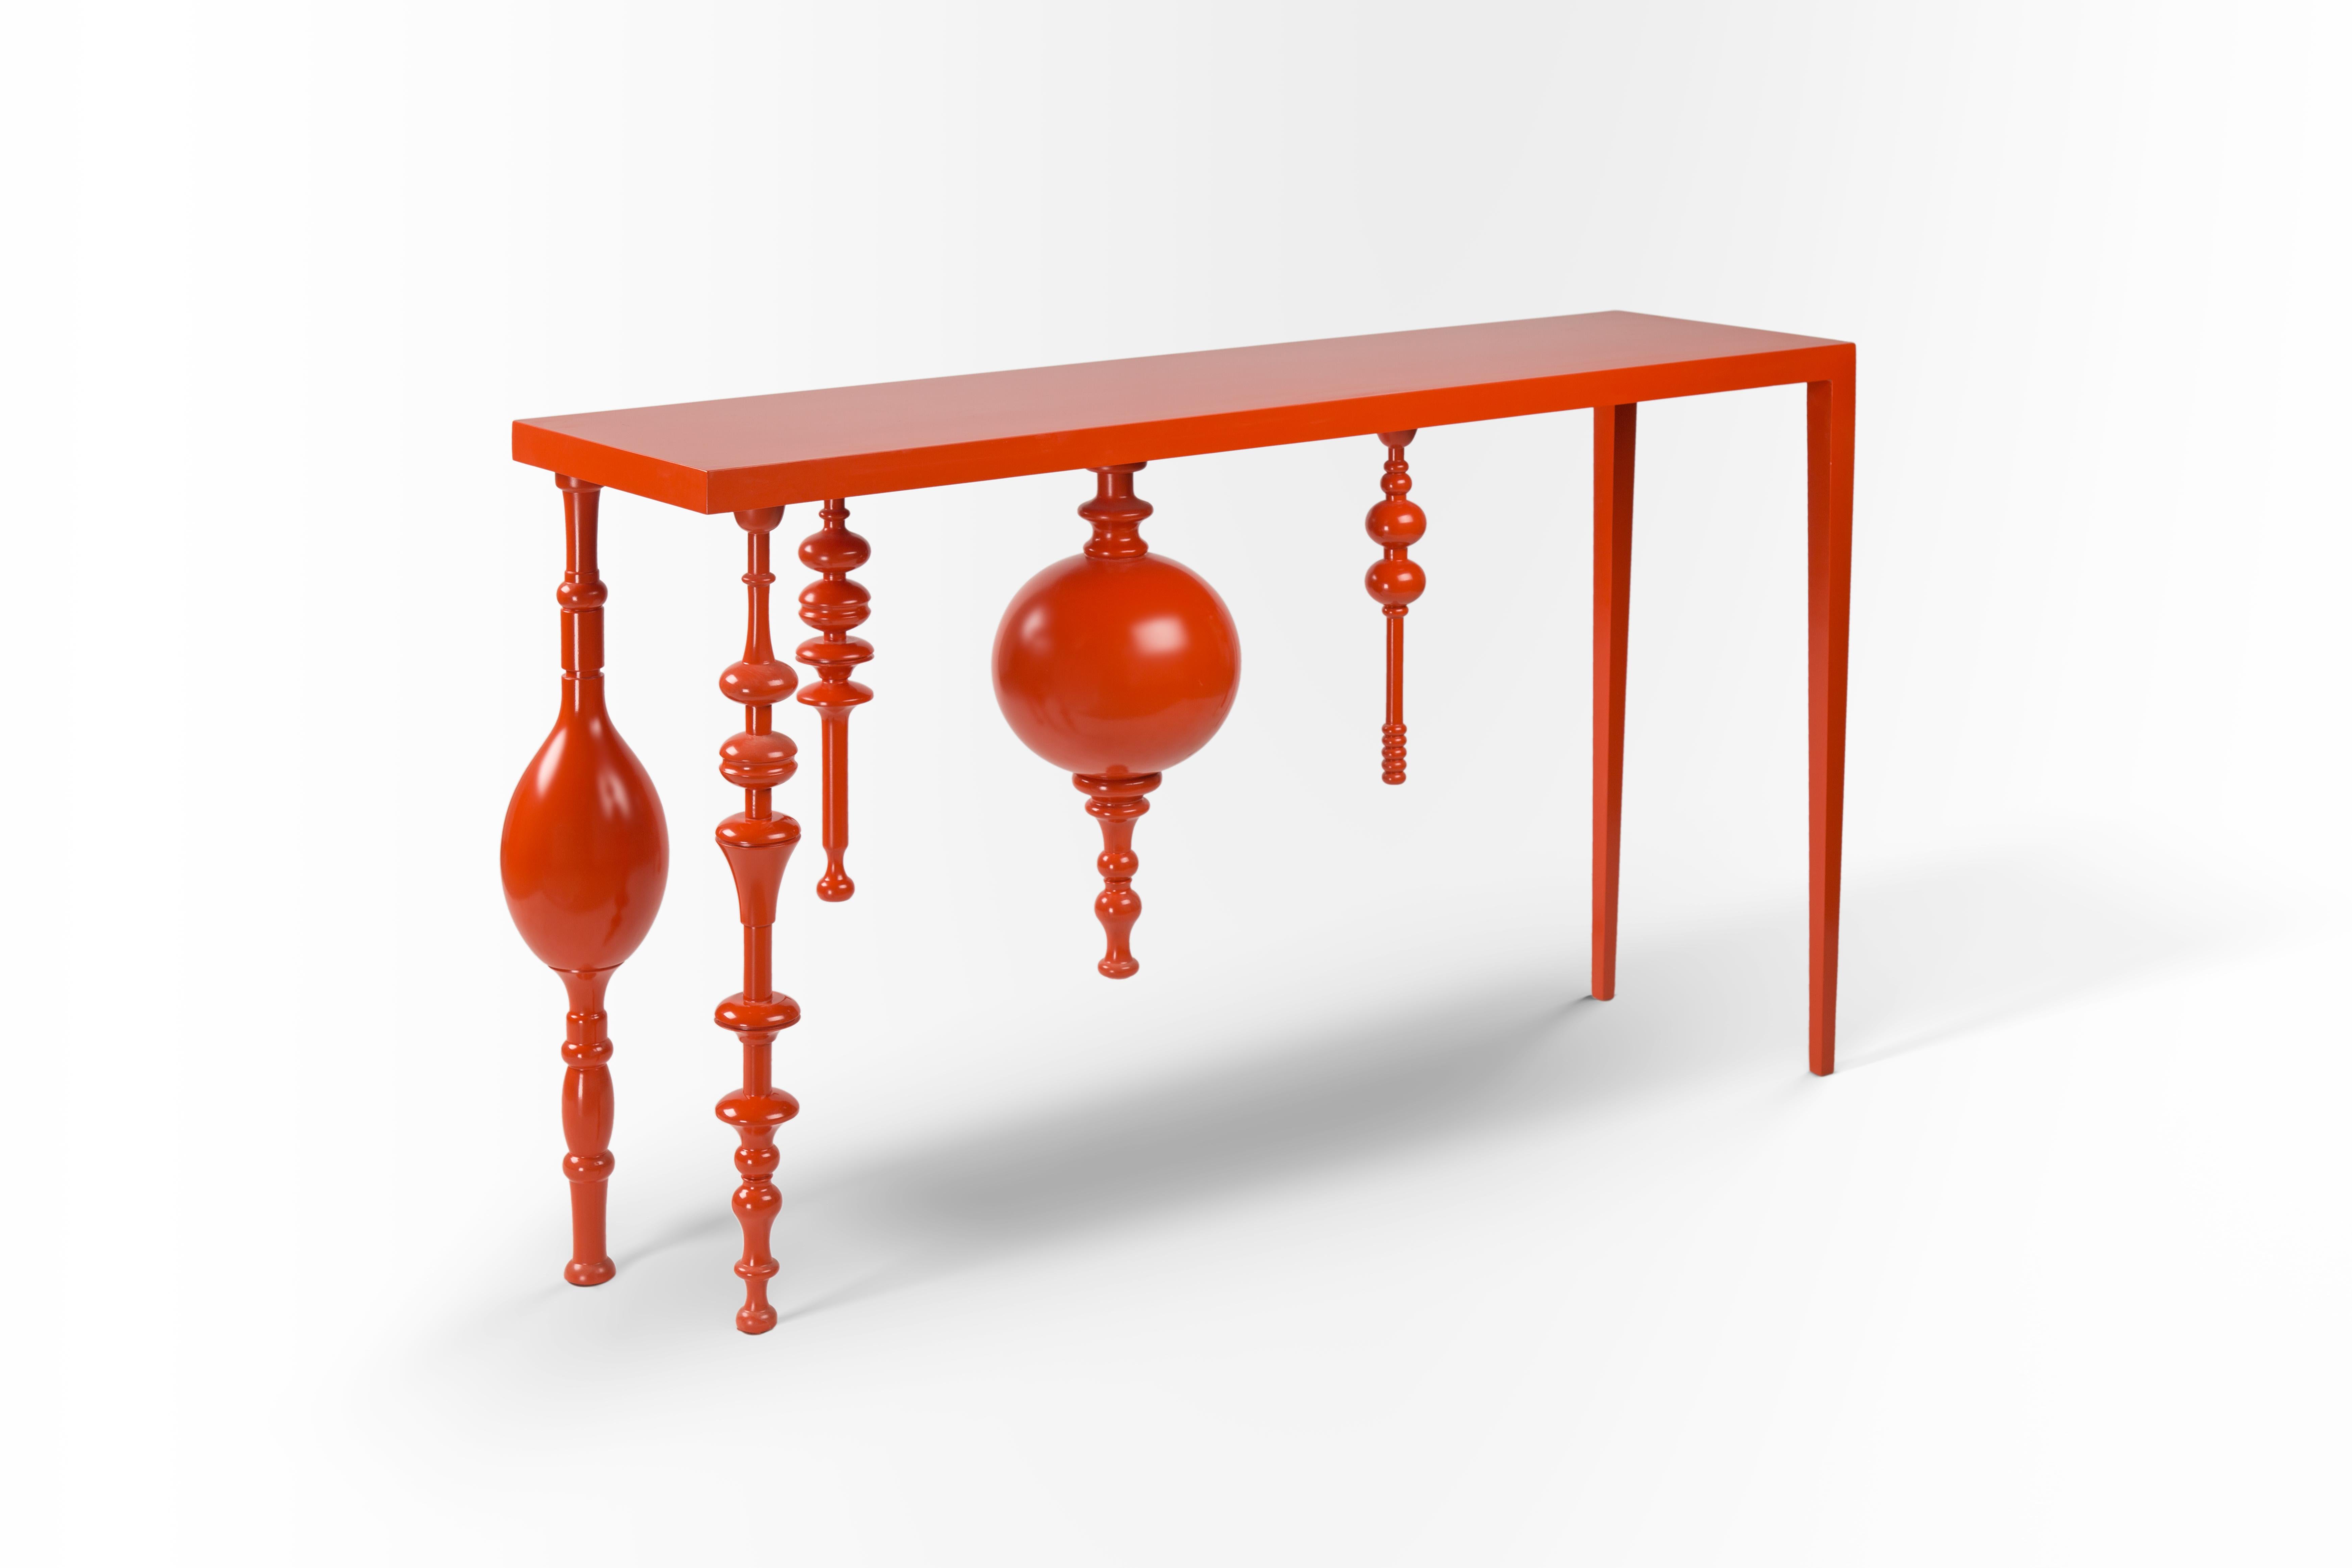 Asymmetrische, von der Arabeske inspirierte Konsole mit lackiertem Holz in leuchtendem Orange.
Unser Konsolendesign Modern Meets Heritage ist eine Anspielung auf die traditionelle islamische Handwerkskunst. Seine Beine sind von der Arabeske